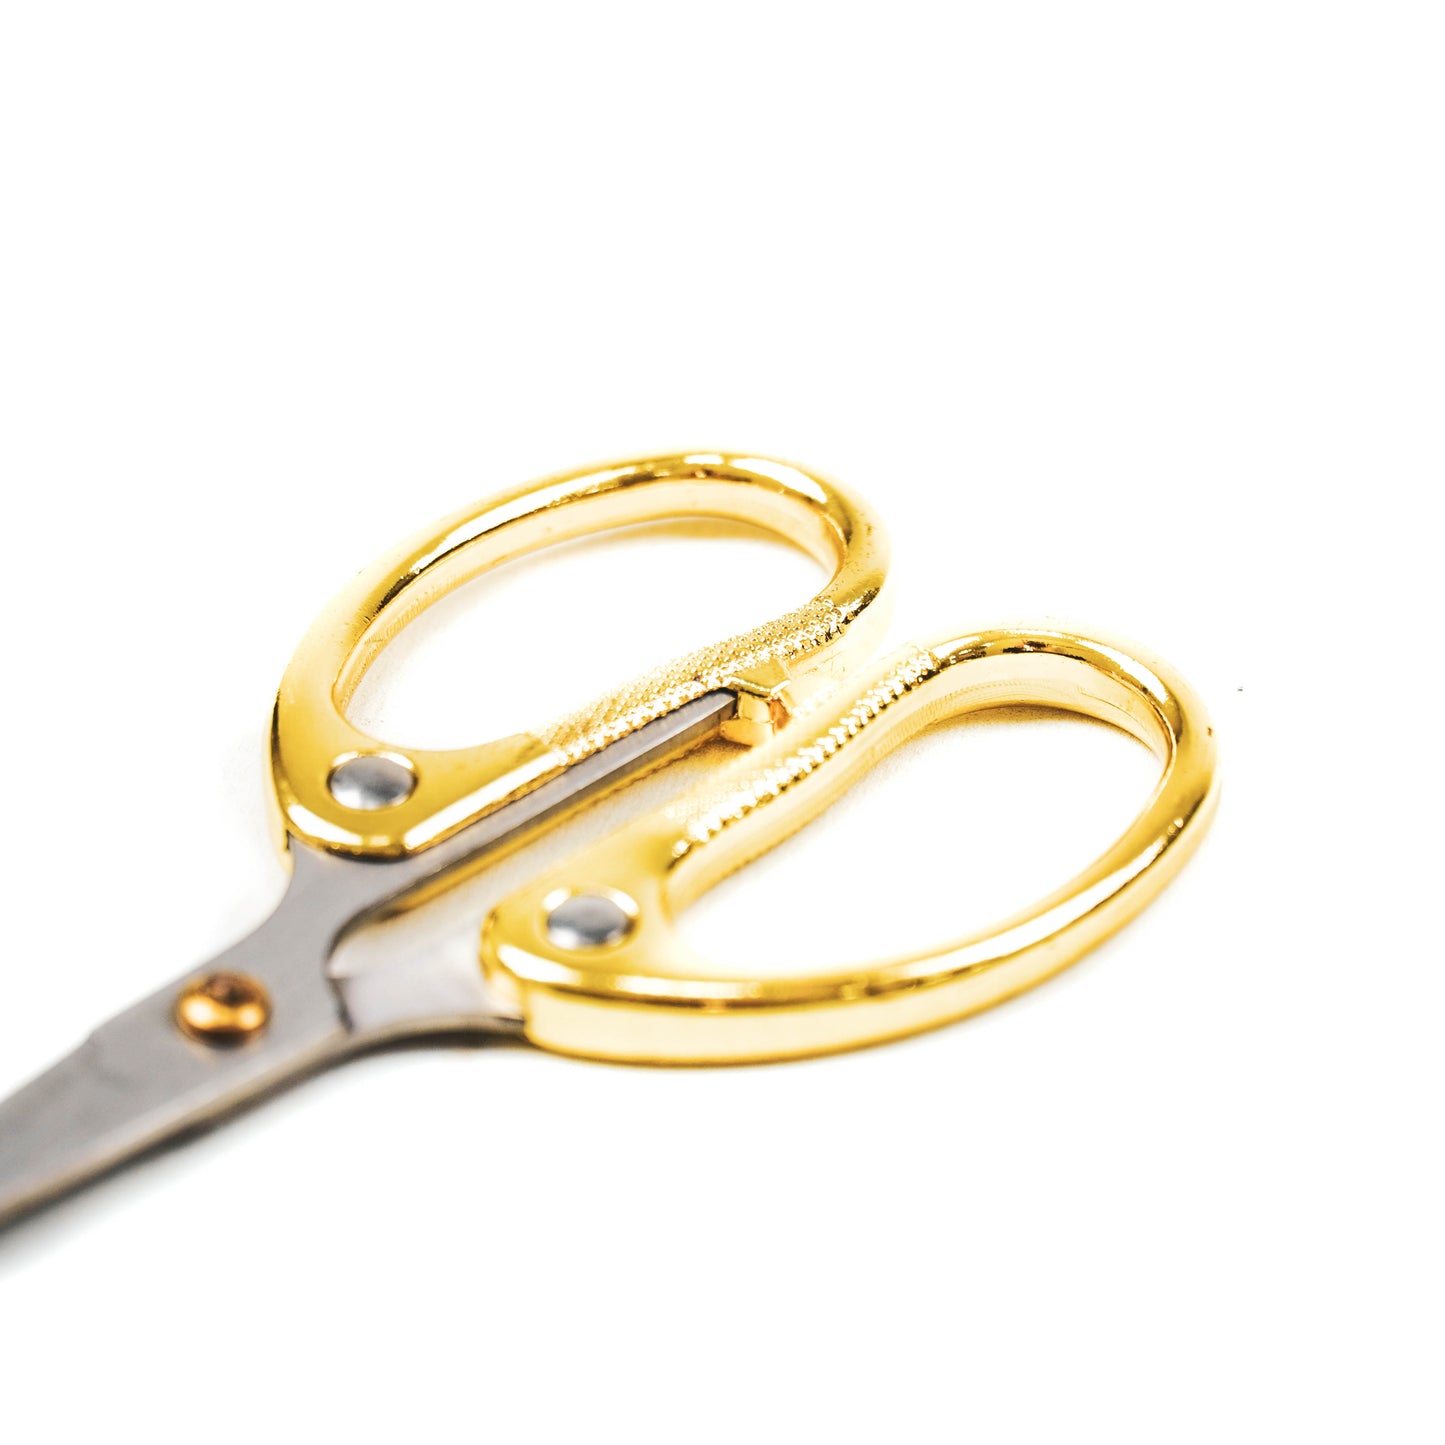 HV Golden Scissors - 6x12.5cm